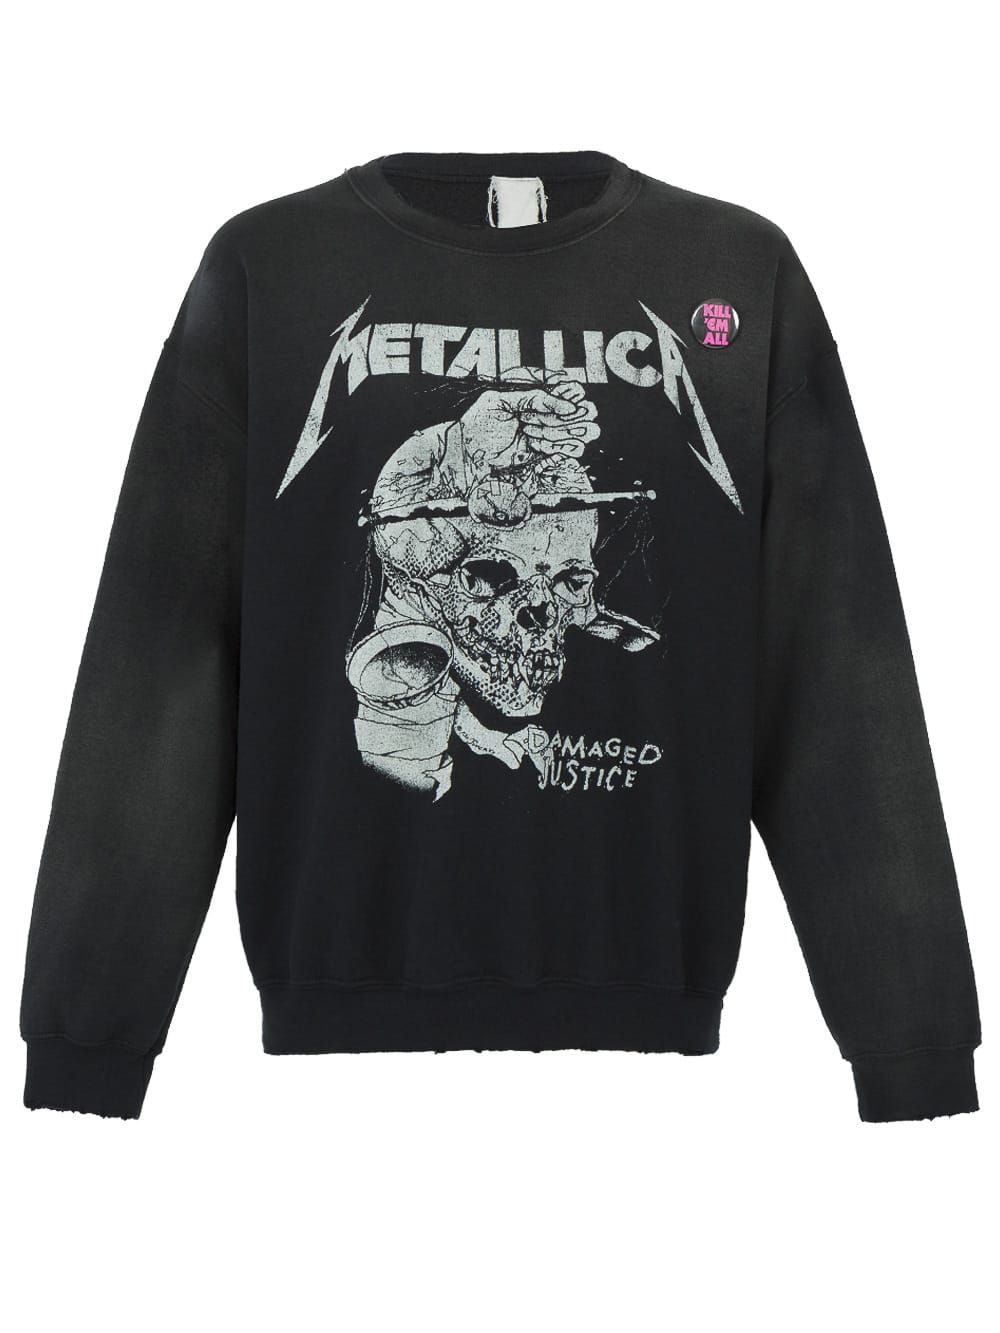 Metallica 1988 Crew Neck Sweatshirt | The Webster